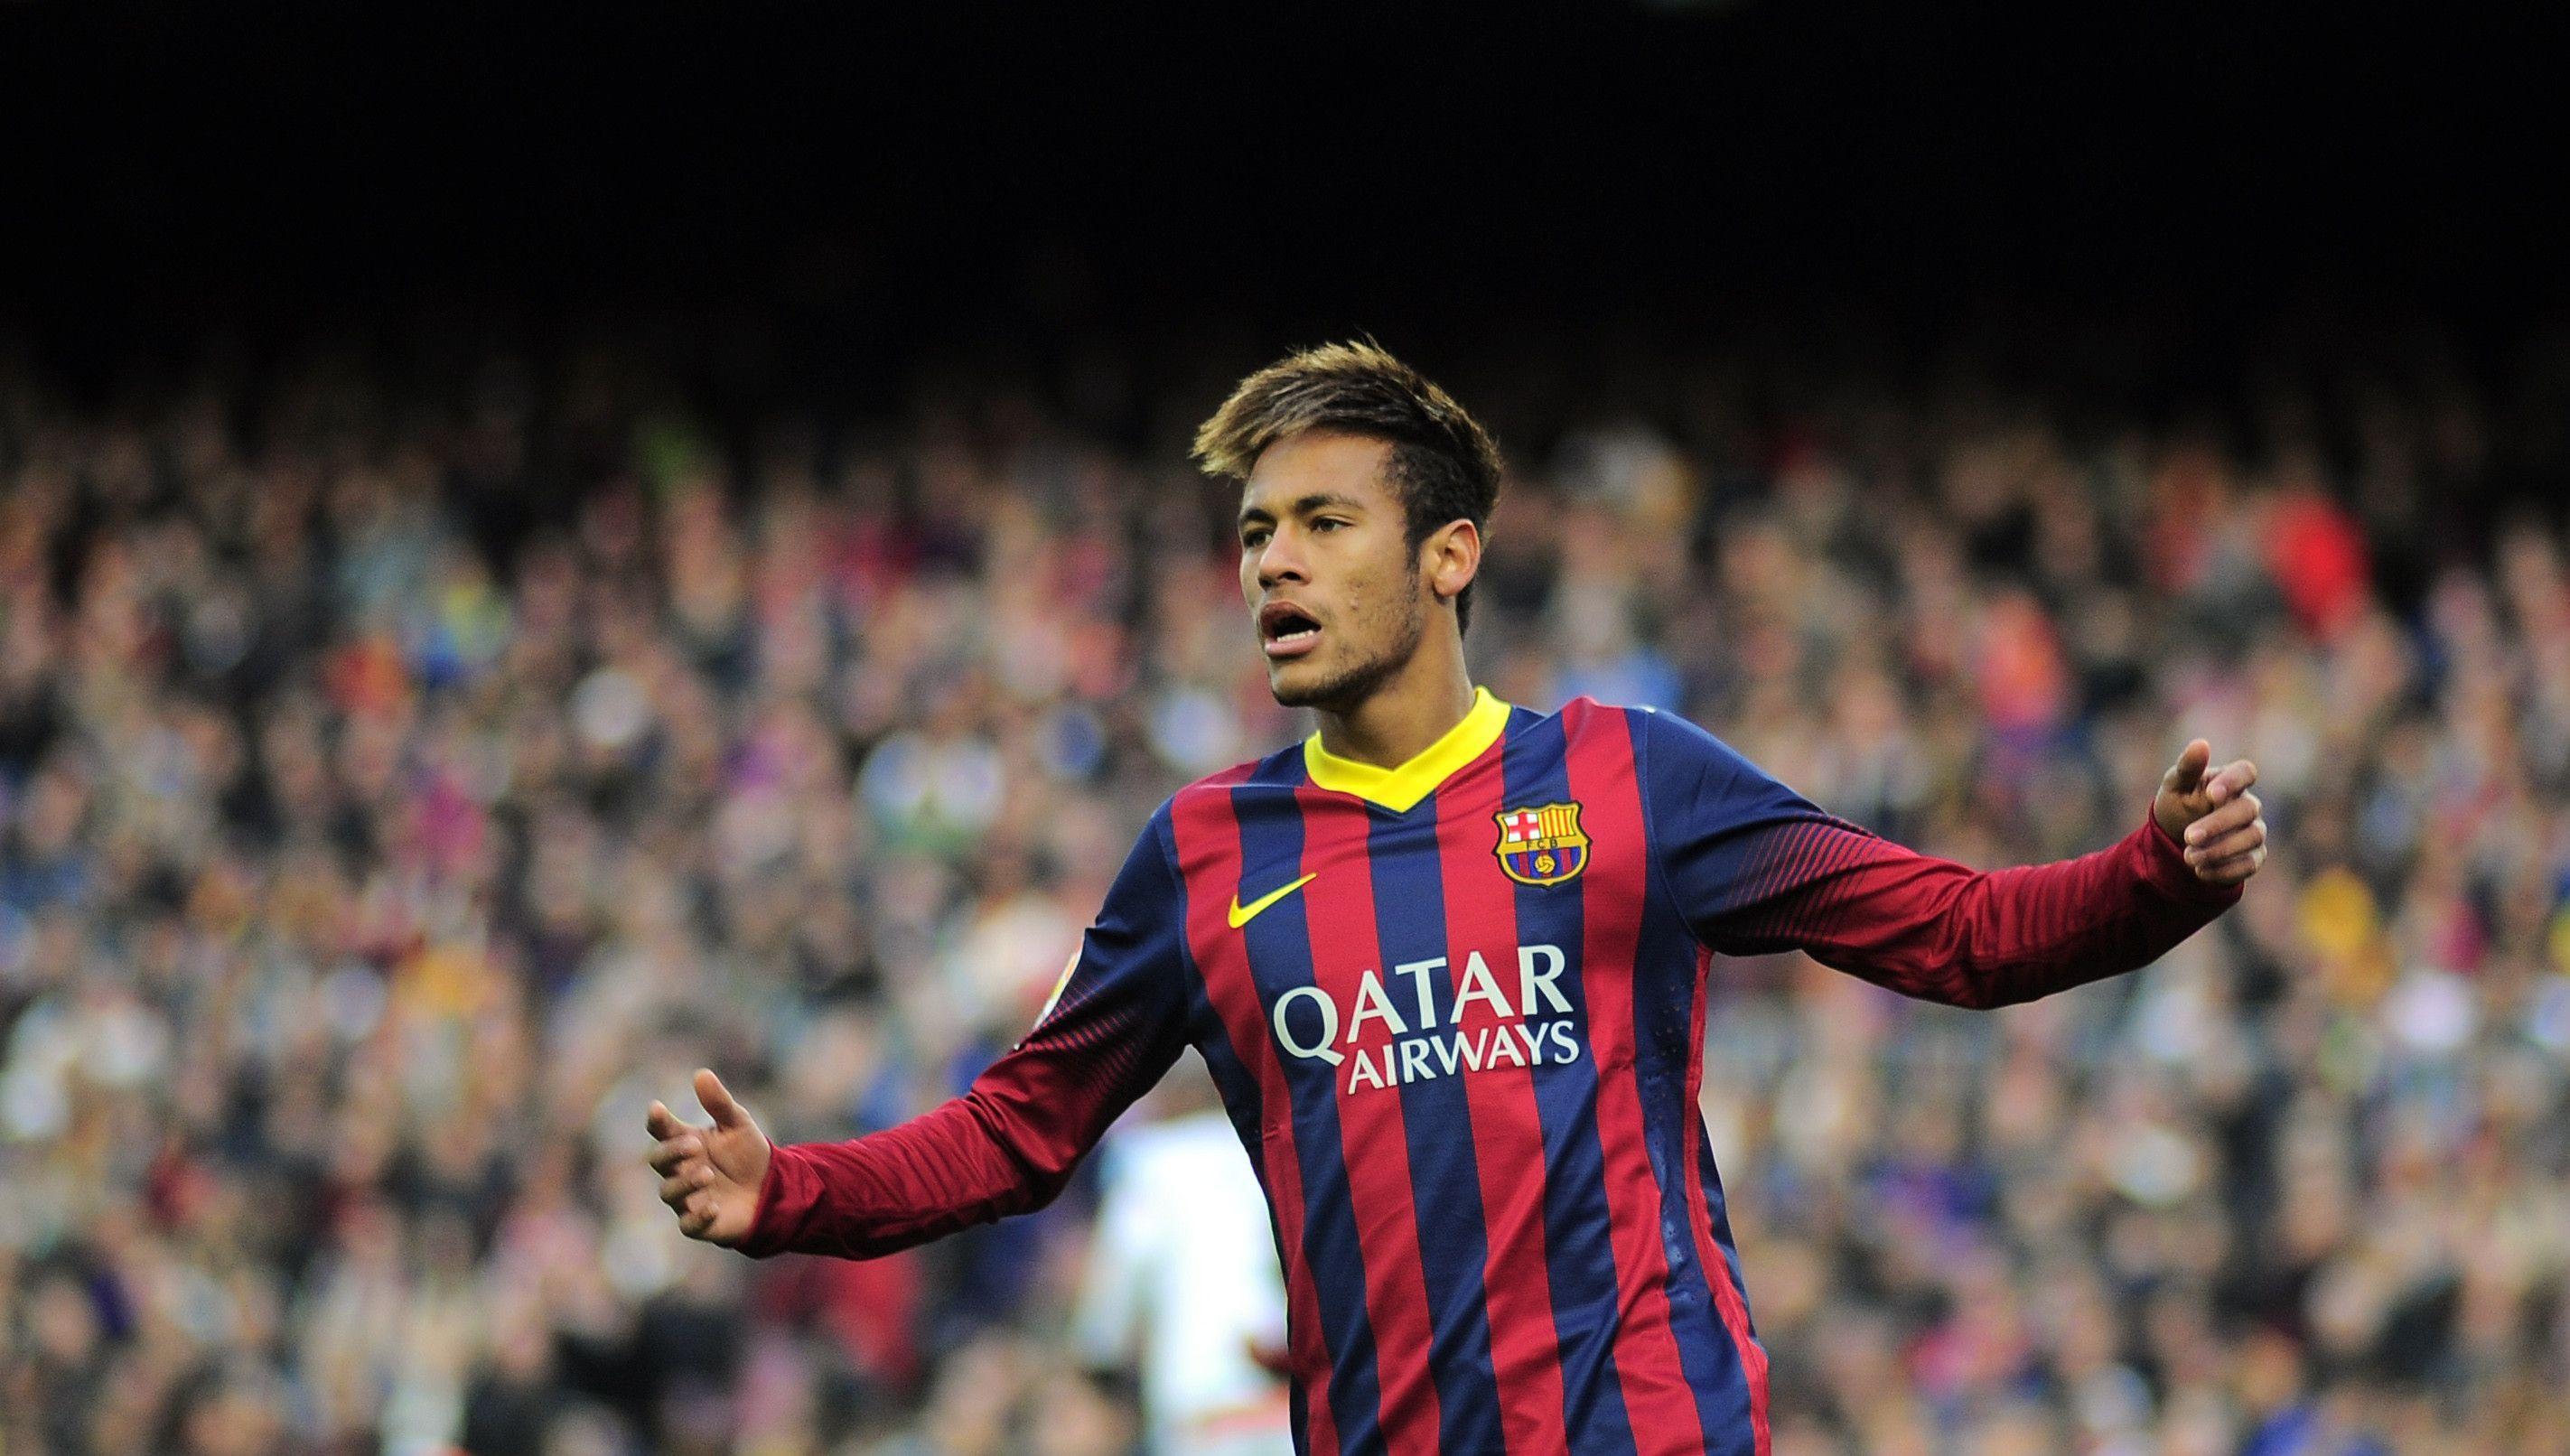 Neymar HD Wallpaper